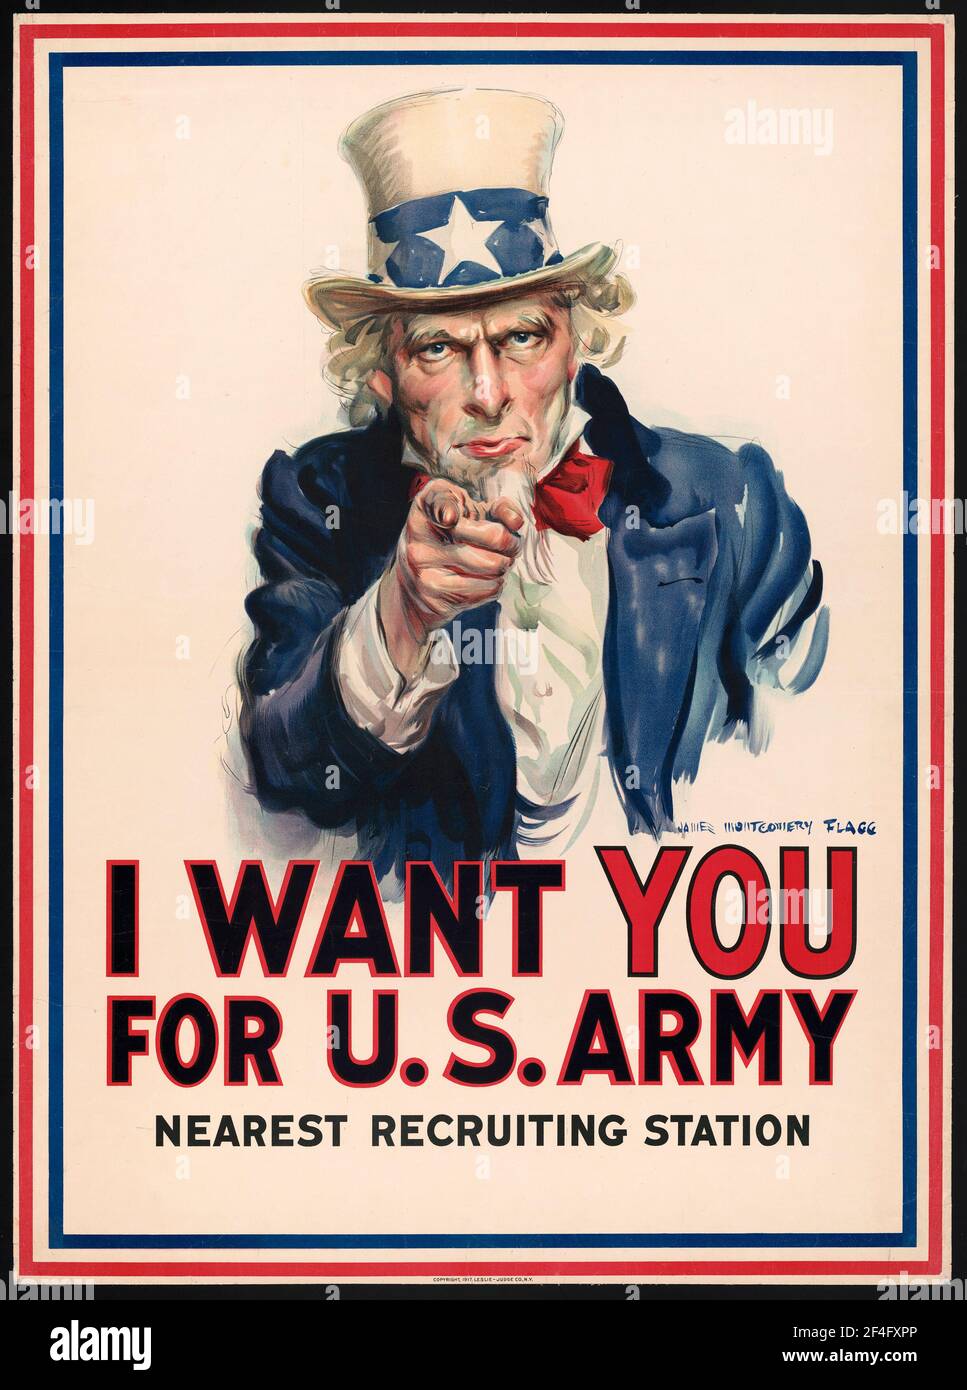 Un póster de reclutamiento de la primera guerra mundial en estados unidos mostrando al tío Sam Diciendo que te quiero para el Ejército de los Estados Unidos Foto de stock